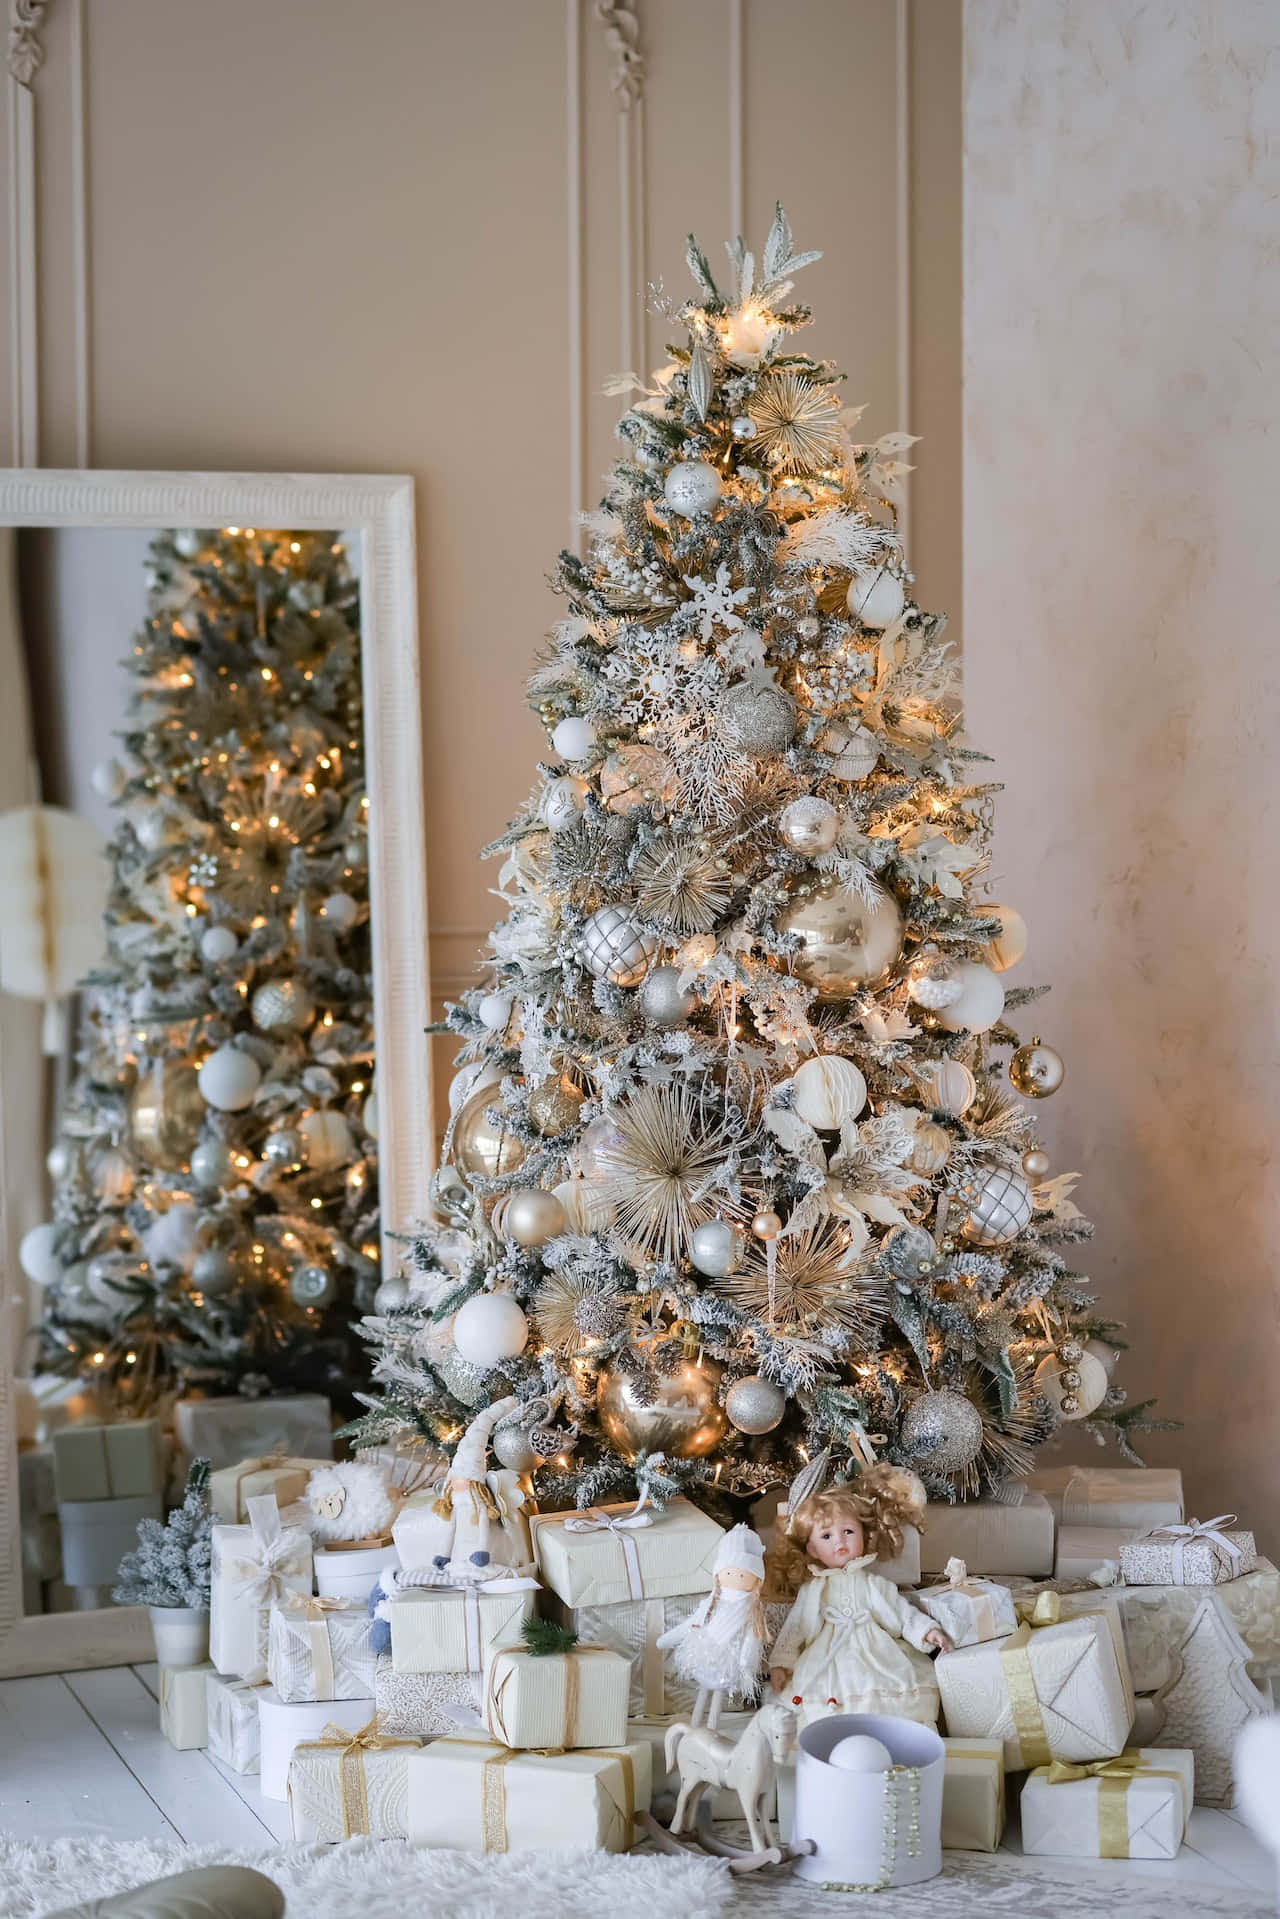 Et glitrende, æstetisk juletræ lyser op i rummet og får os i julestemning. Wallpaper